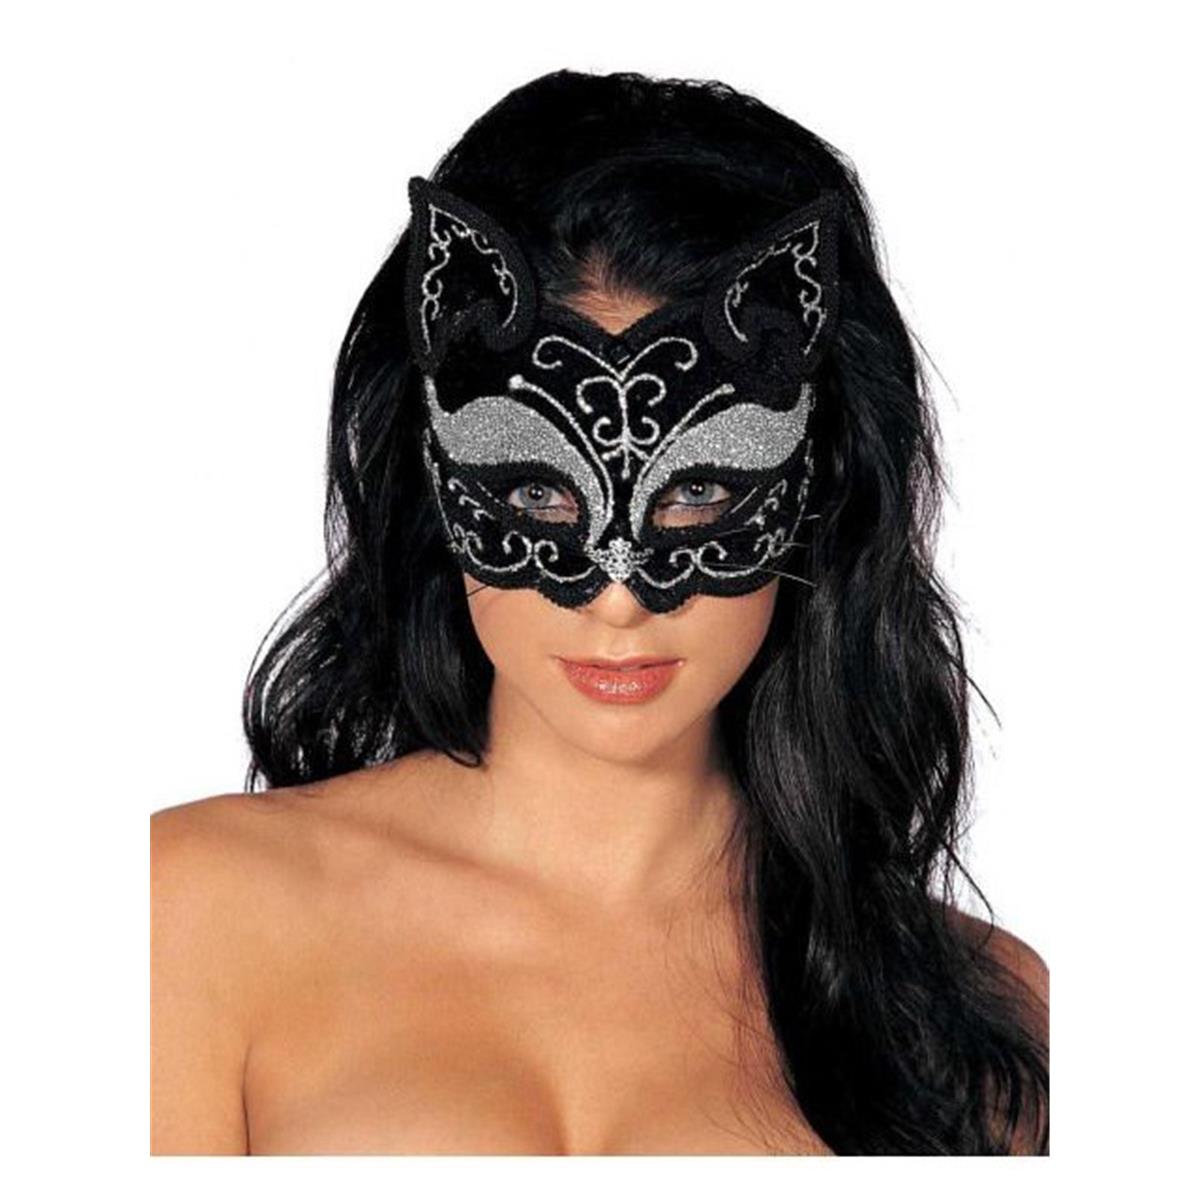 271596 Mardi Gras Adult Mask - Glitzy Cat Black